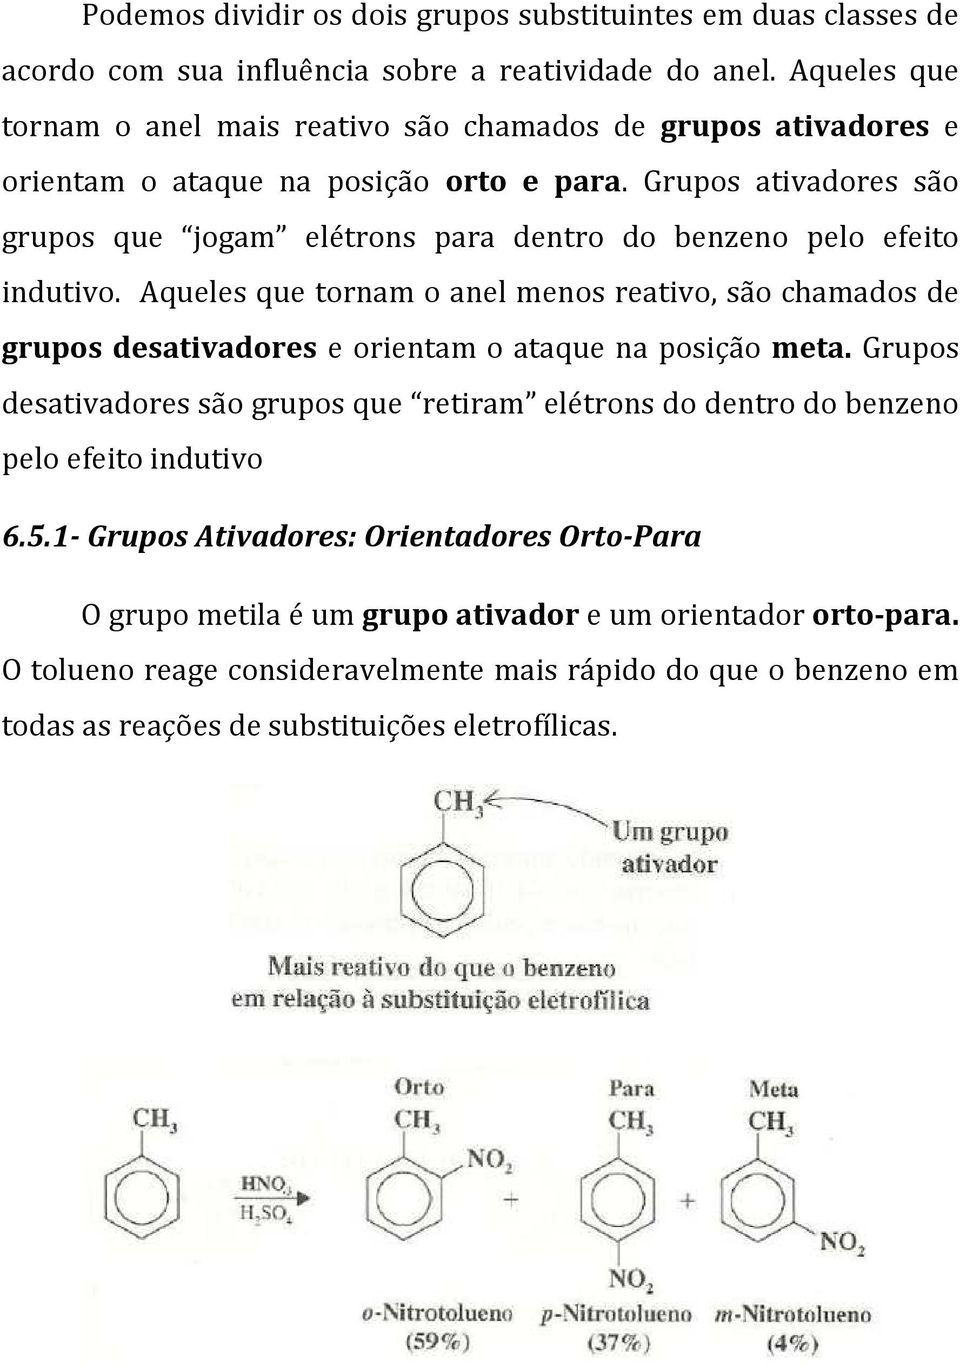 Grupos ativadores são grupos que jogam elétrons para dentro do benzeno pelo efeito indutivo.